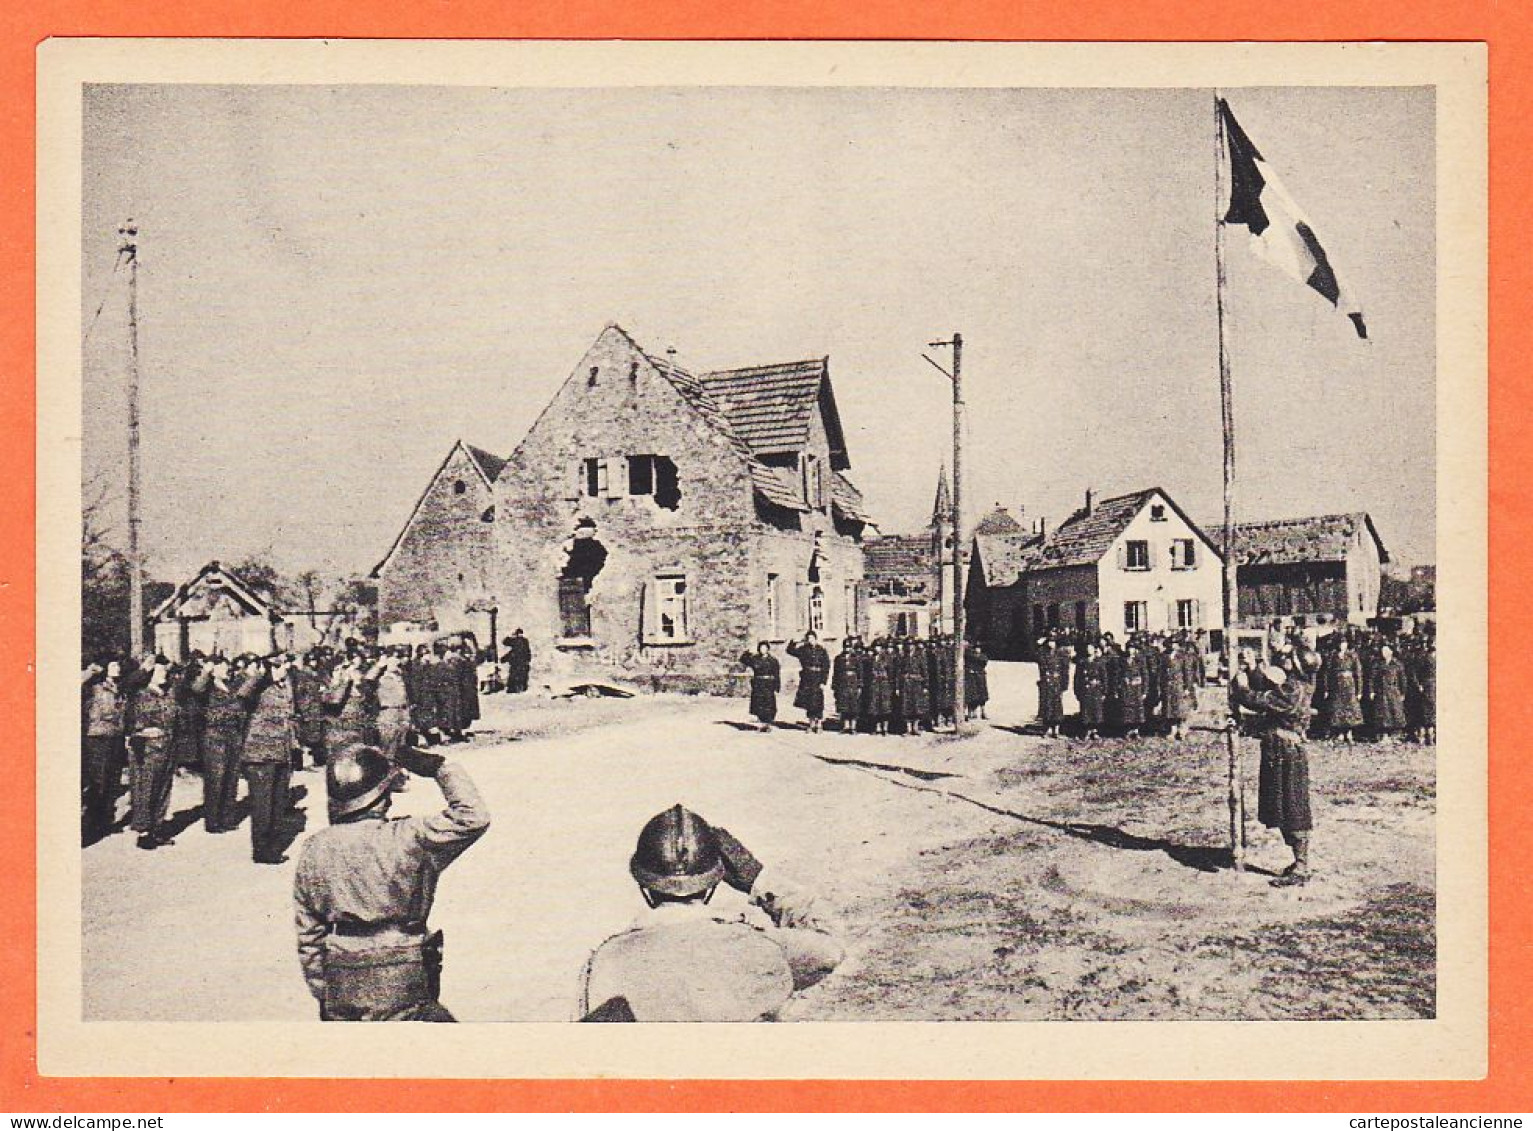 04518 / SCHEIBENHARDT 24 Mars 1945 Premiere Ceremonie Couleurs Territoire Allemand Armée Française Guerre WW2 / BRAUN - Guerre 1939-45